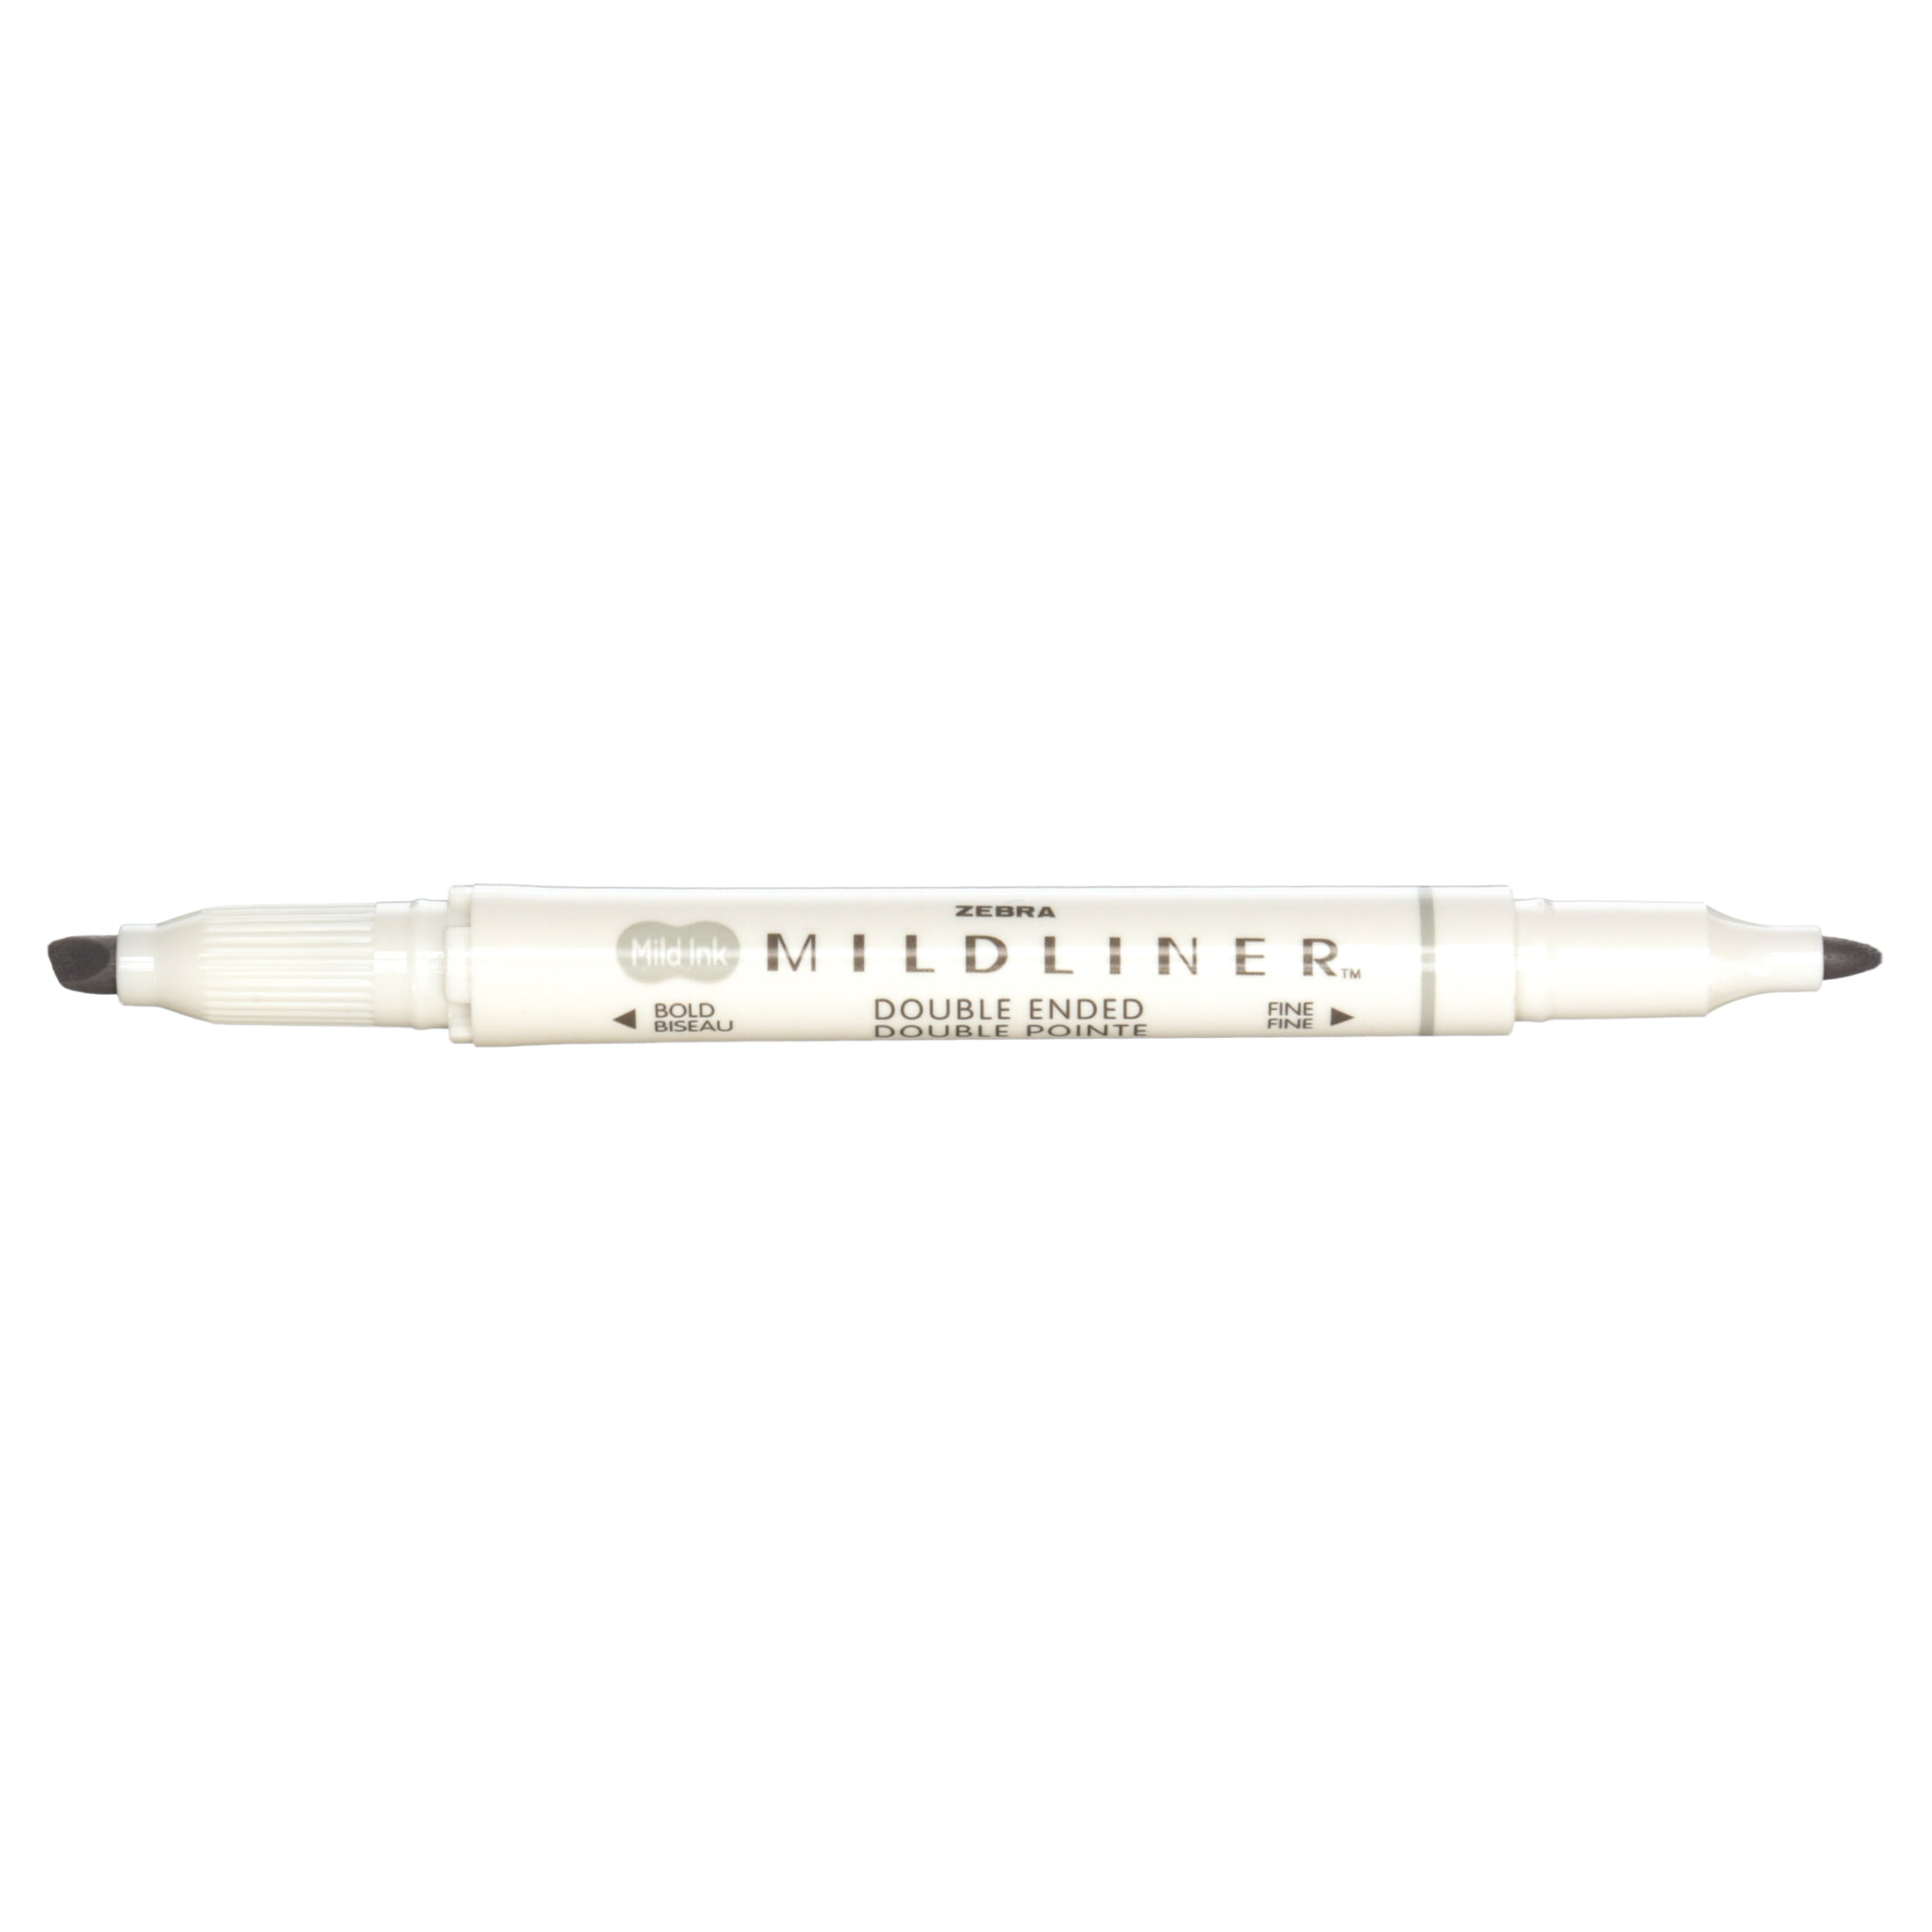 Zebra Journaling Pen Set – ARCH Art Supplies